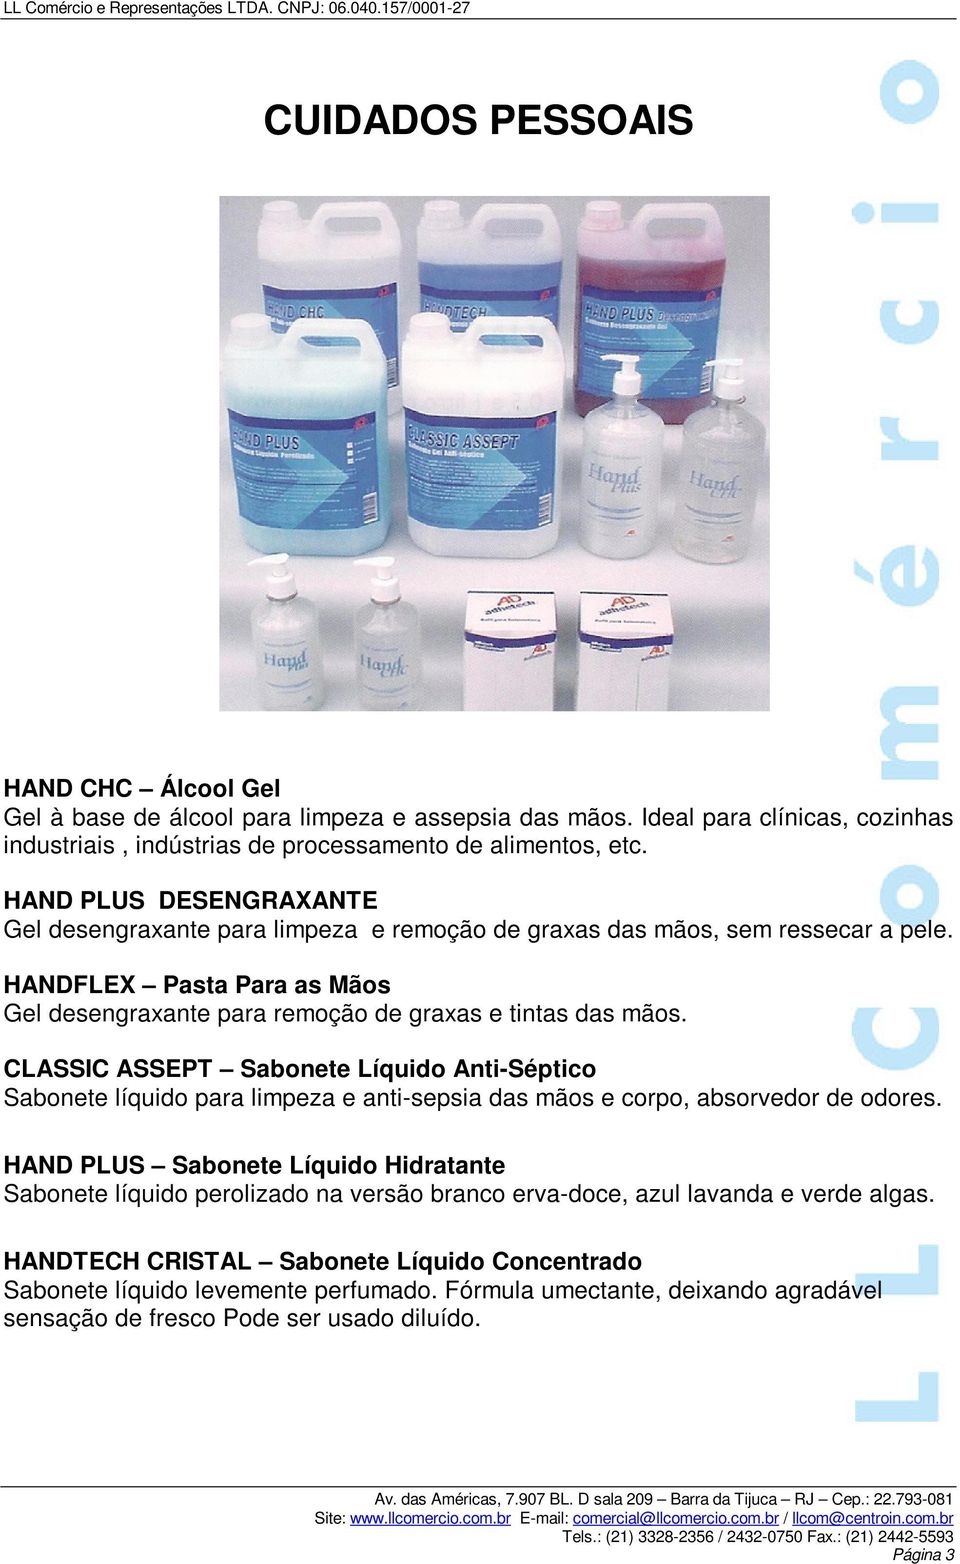 CLASSIC ASSEPT Sabonete Líquido Anti-Séptico Sabonete líquido para limpeza e anti-sepsia das mãos e corpo, absorvedor de odores.